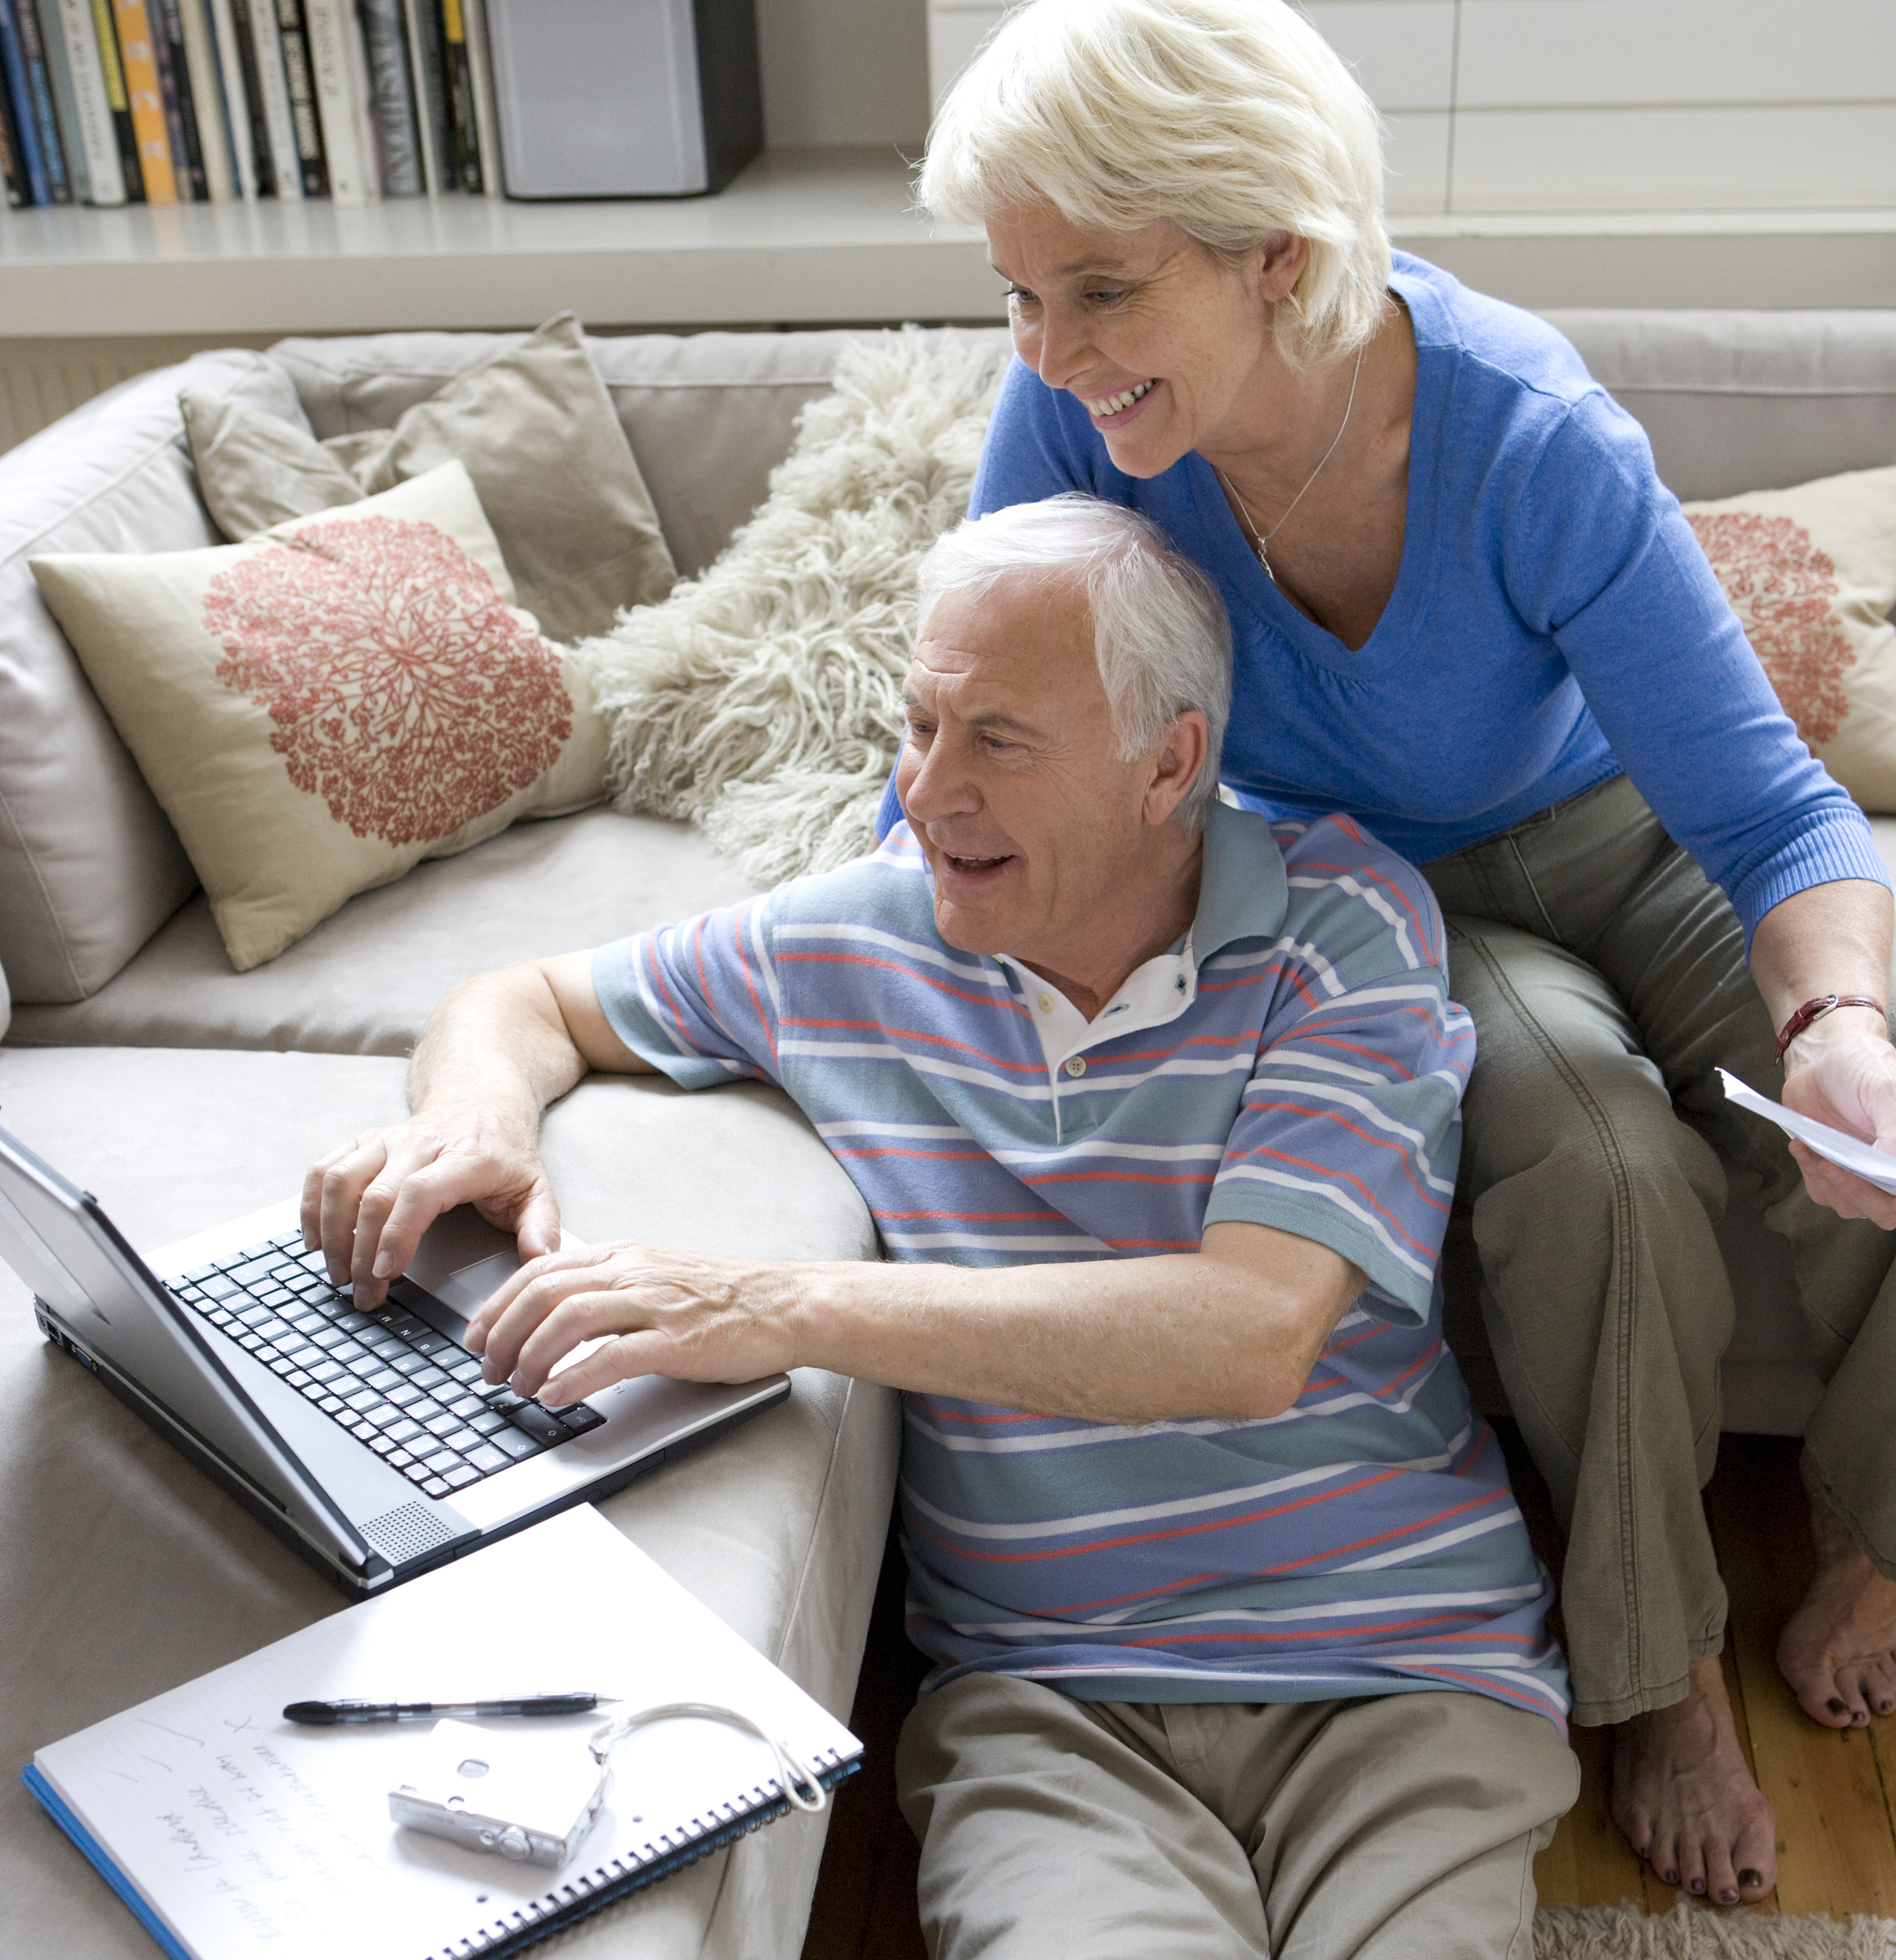 Älteres Paar am Computer